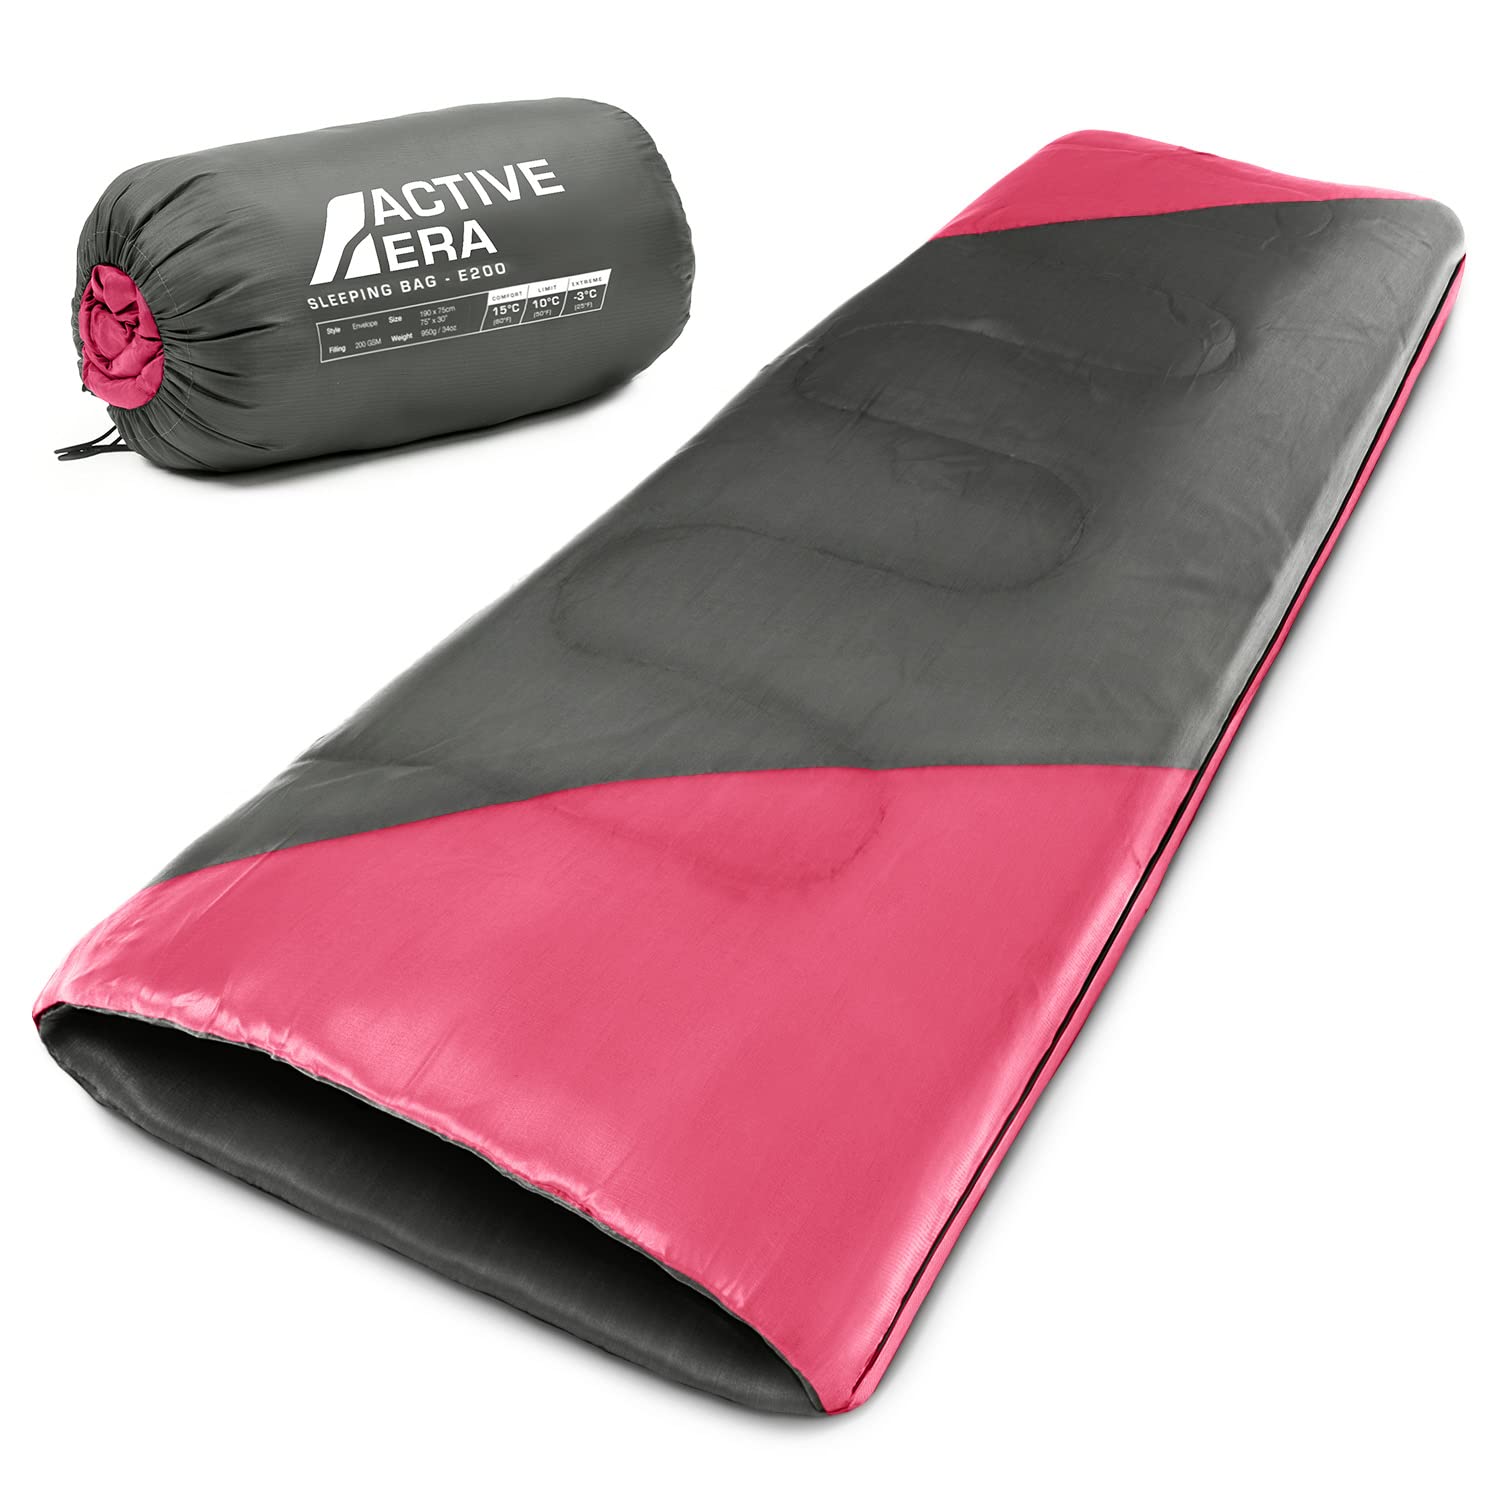 Active Era Deckenschlafsack - Sleeping Bag, -3°C bis 15°C Sommer, Frühling, Herbst - Leichter Schlafsack Outdoor und Indoor - Pink